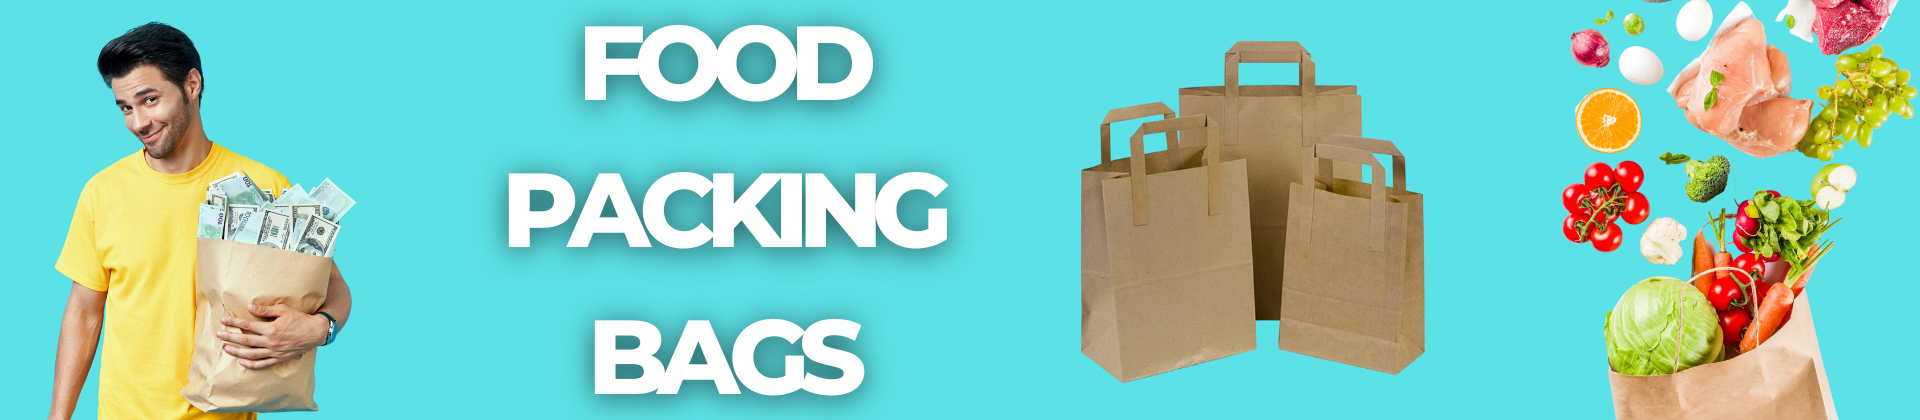 Food packaging bags